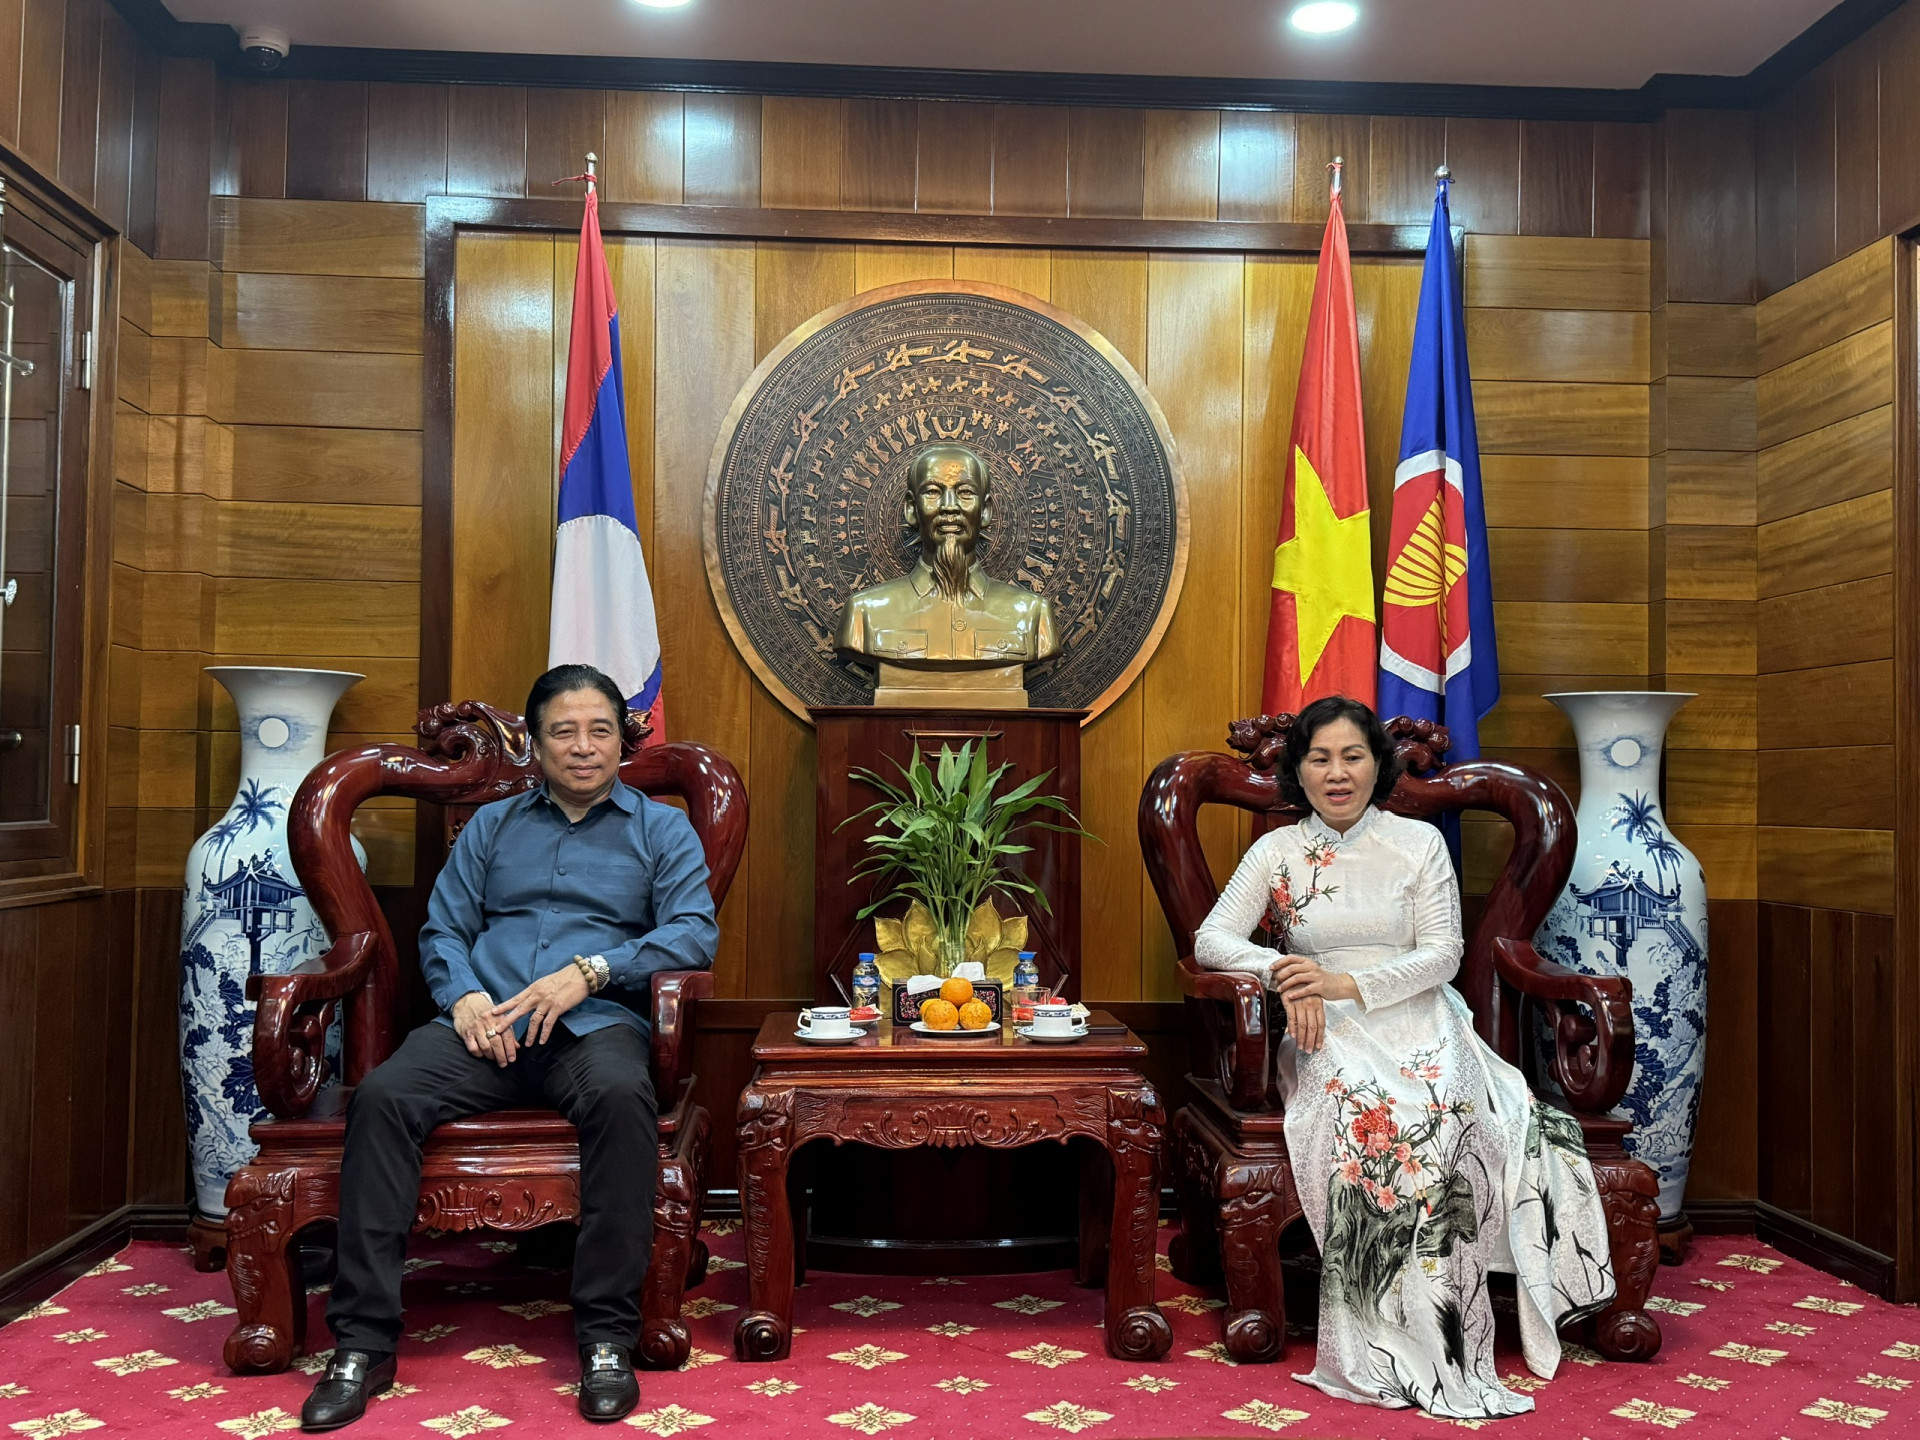 Đồng chí Nguyễn Khắc Toàn gặp và chào xã giao bà Kiều Thị Hằng Phúc - Tổng Lãnh sự Việt Nam tại Luang Prabang.